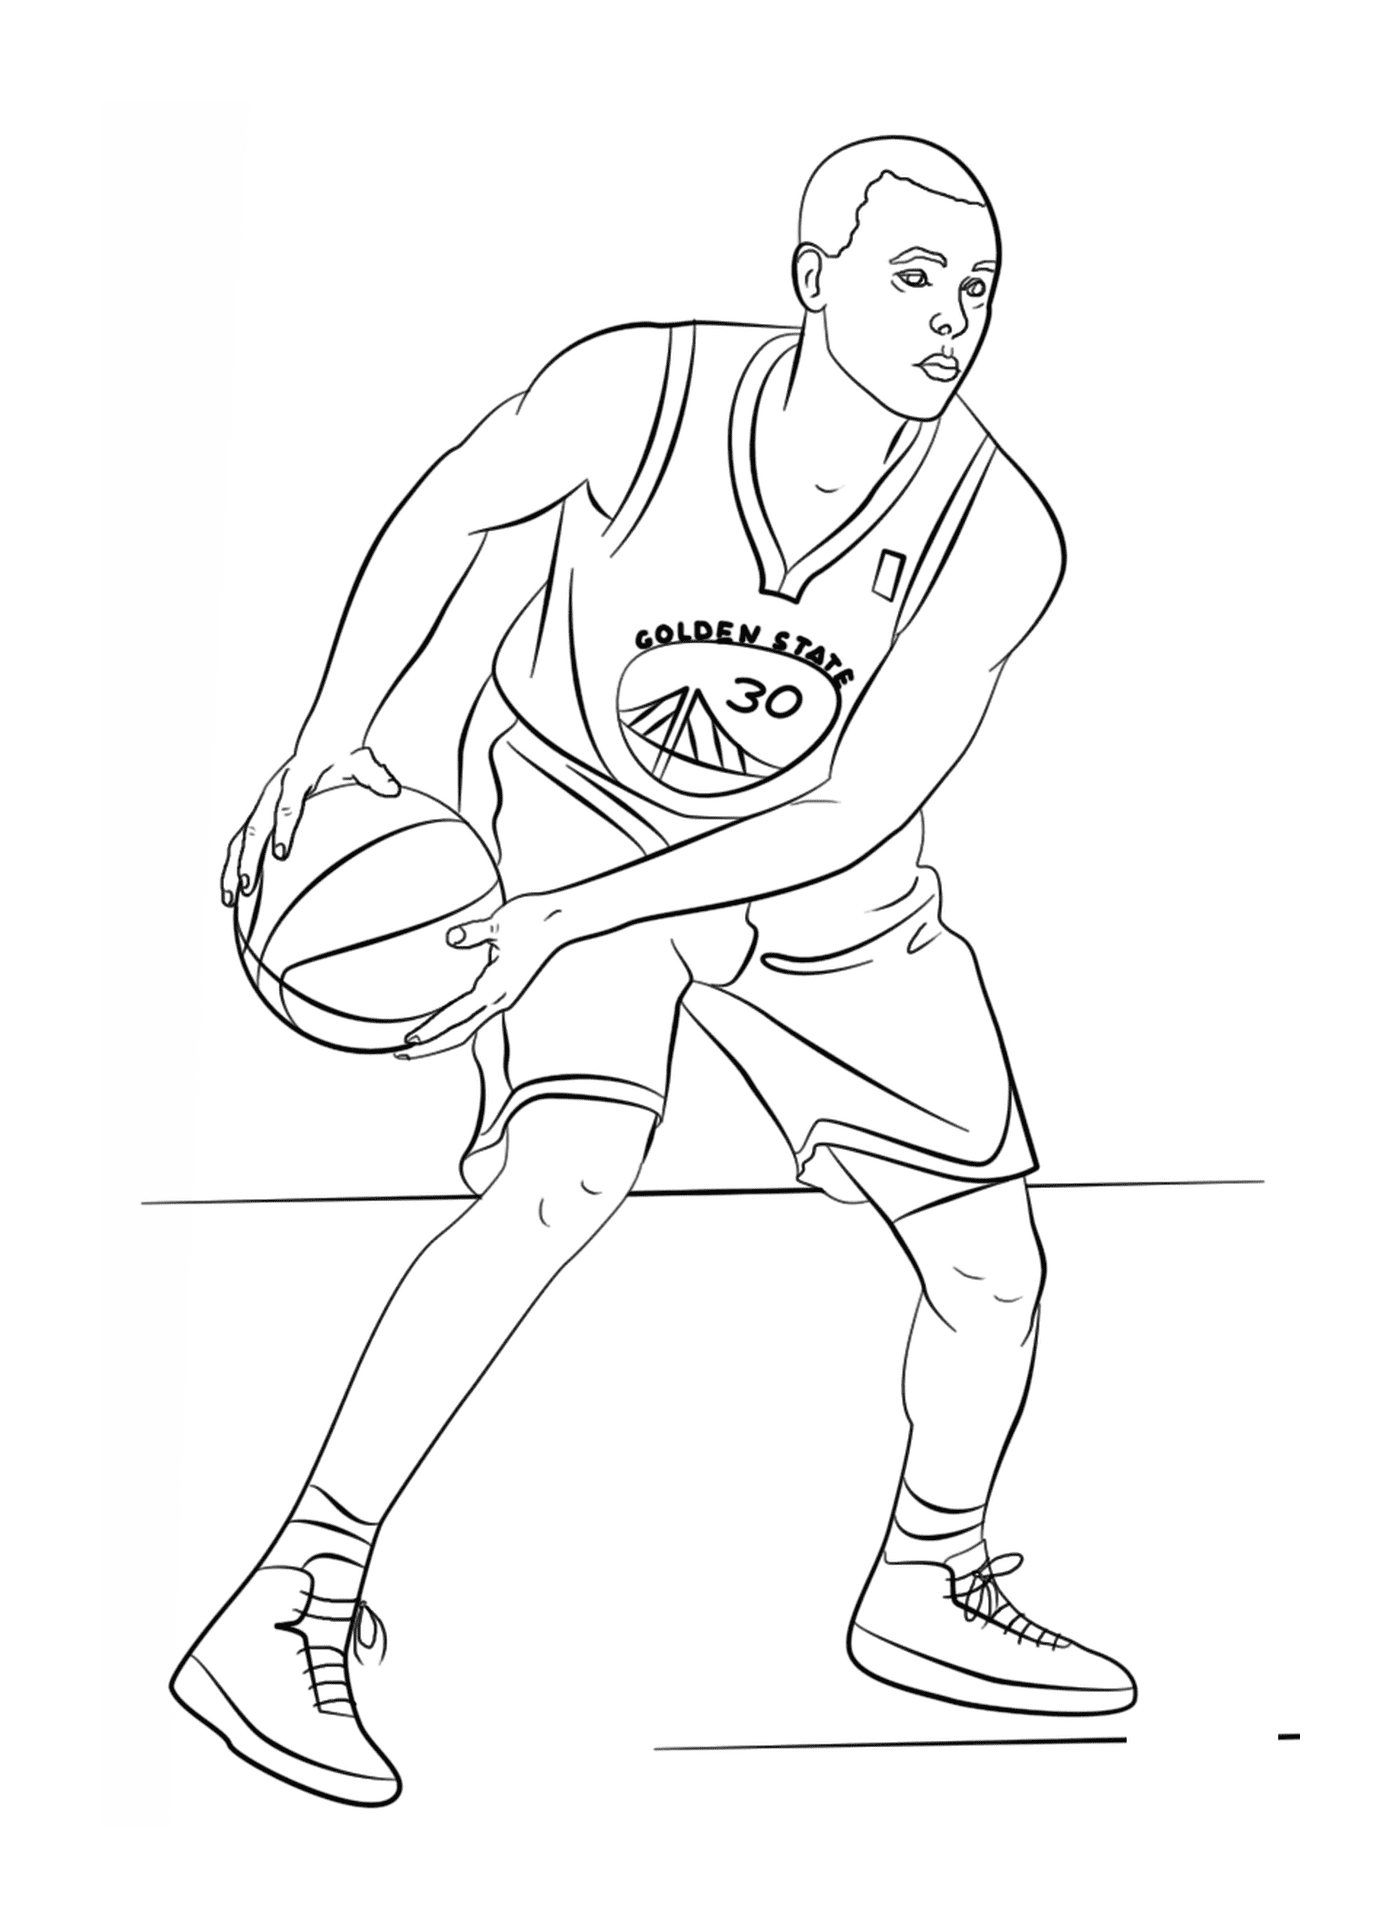  Stephen Curry, NBA篮球运动员 